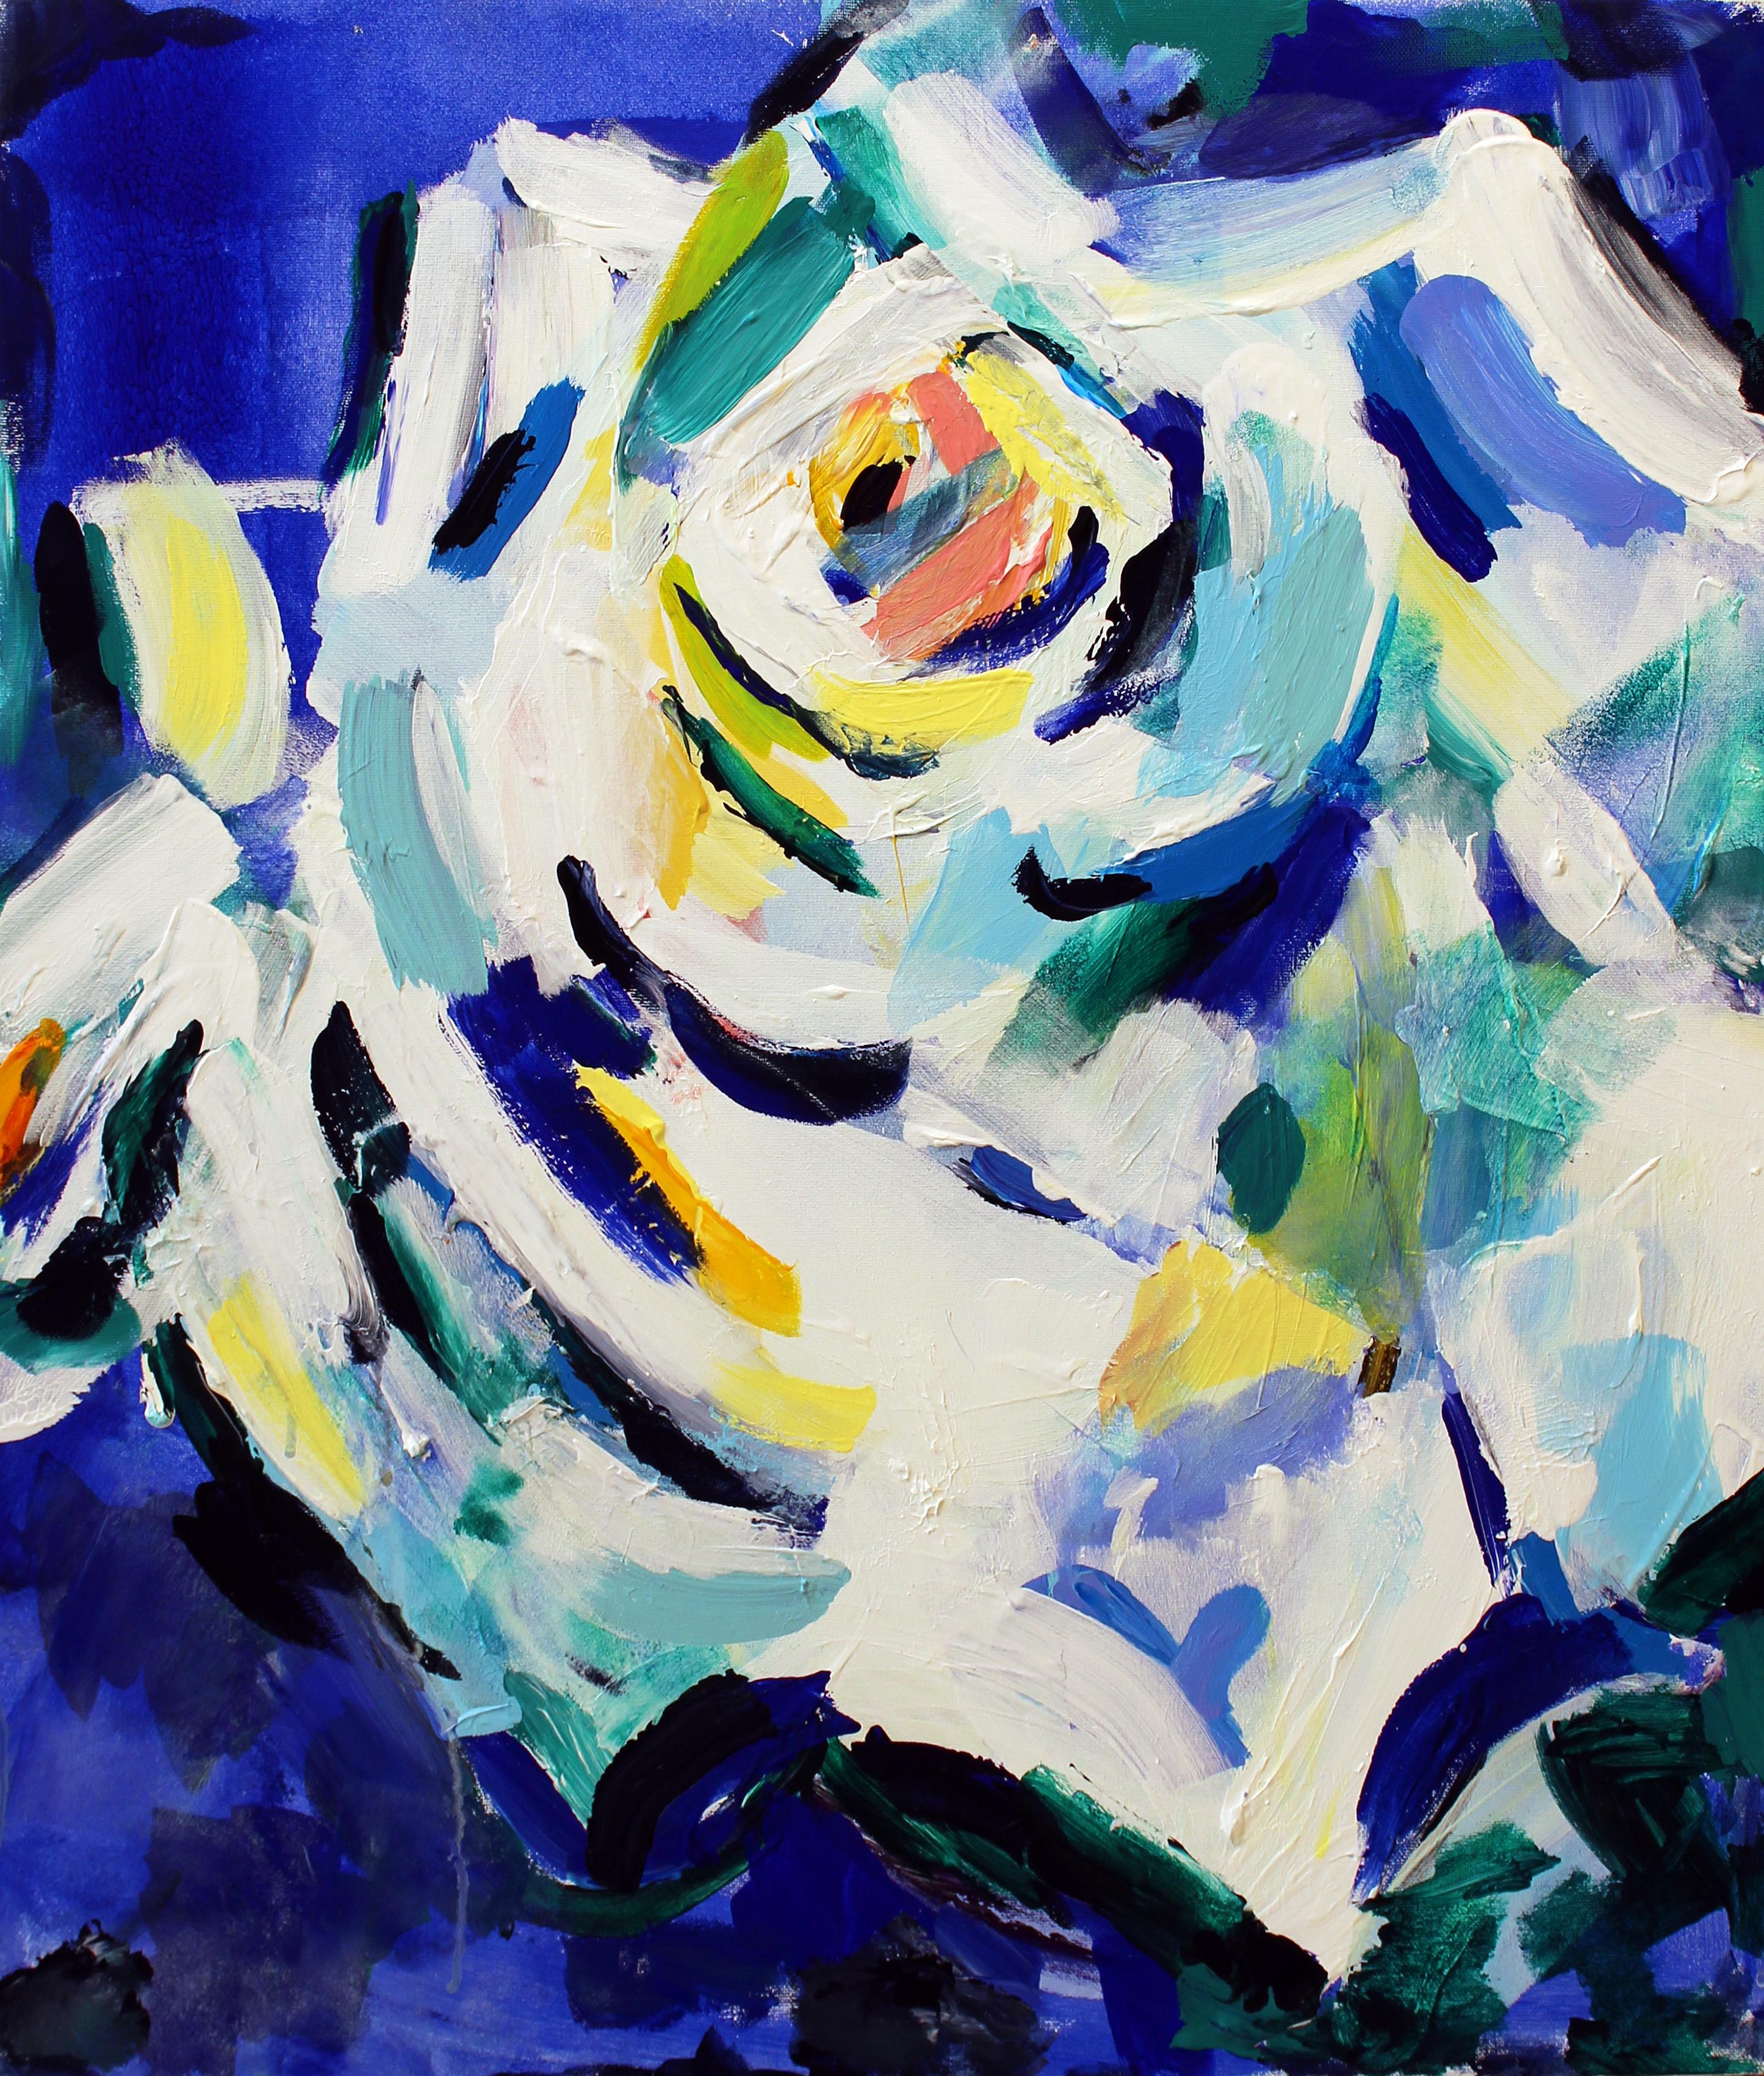 Abstract Painting Masha  Potapenkova - Masha Potapenkova, White Rose, 2018, huile sur toile, 70 x 60 cm (27x23 po)